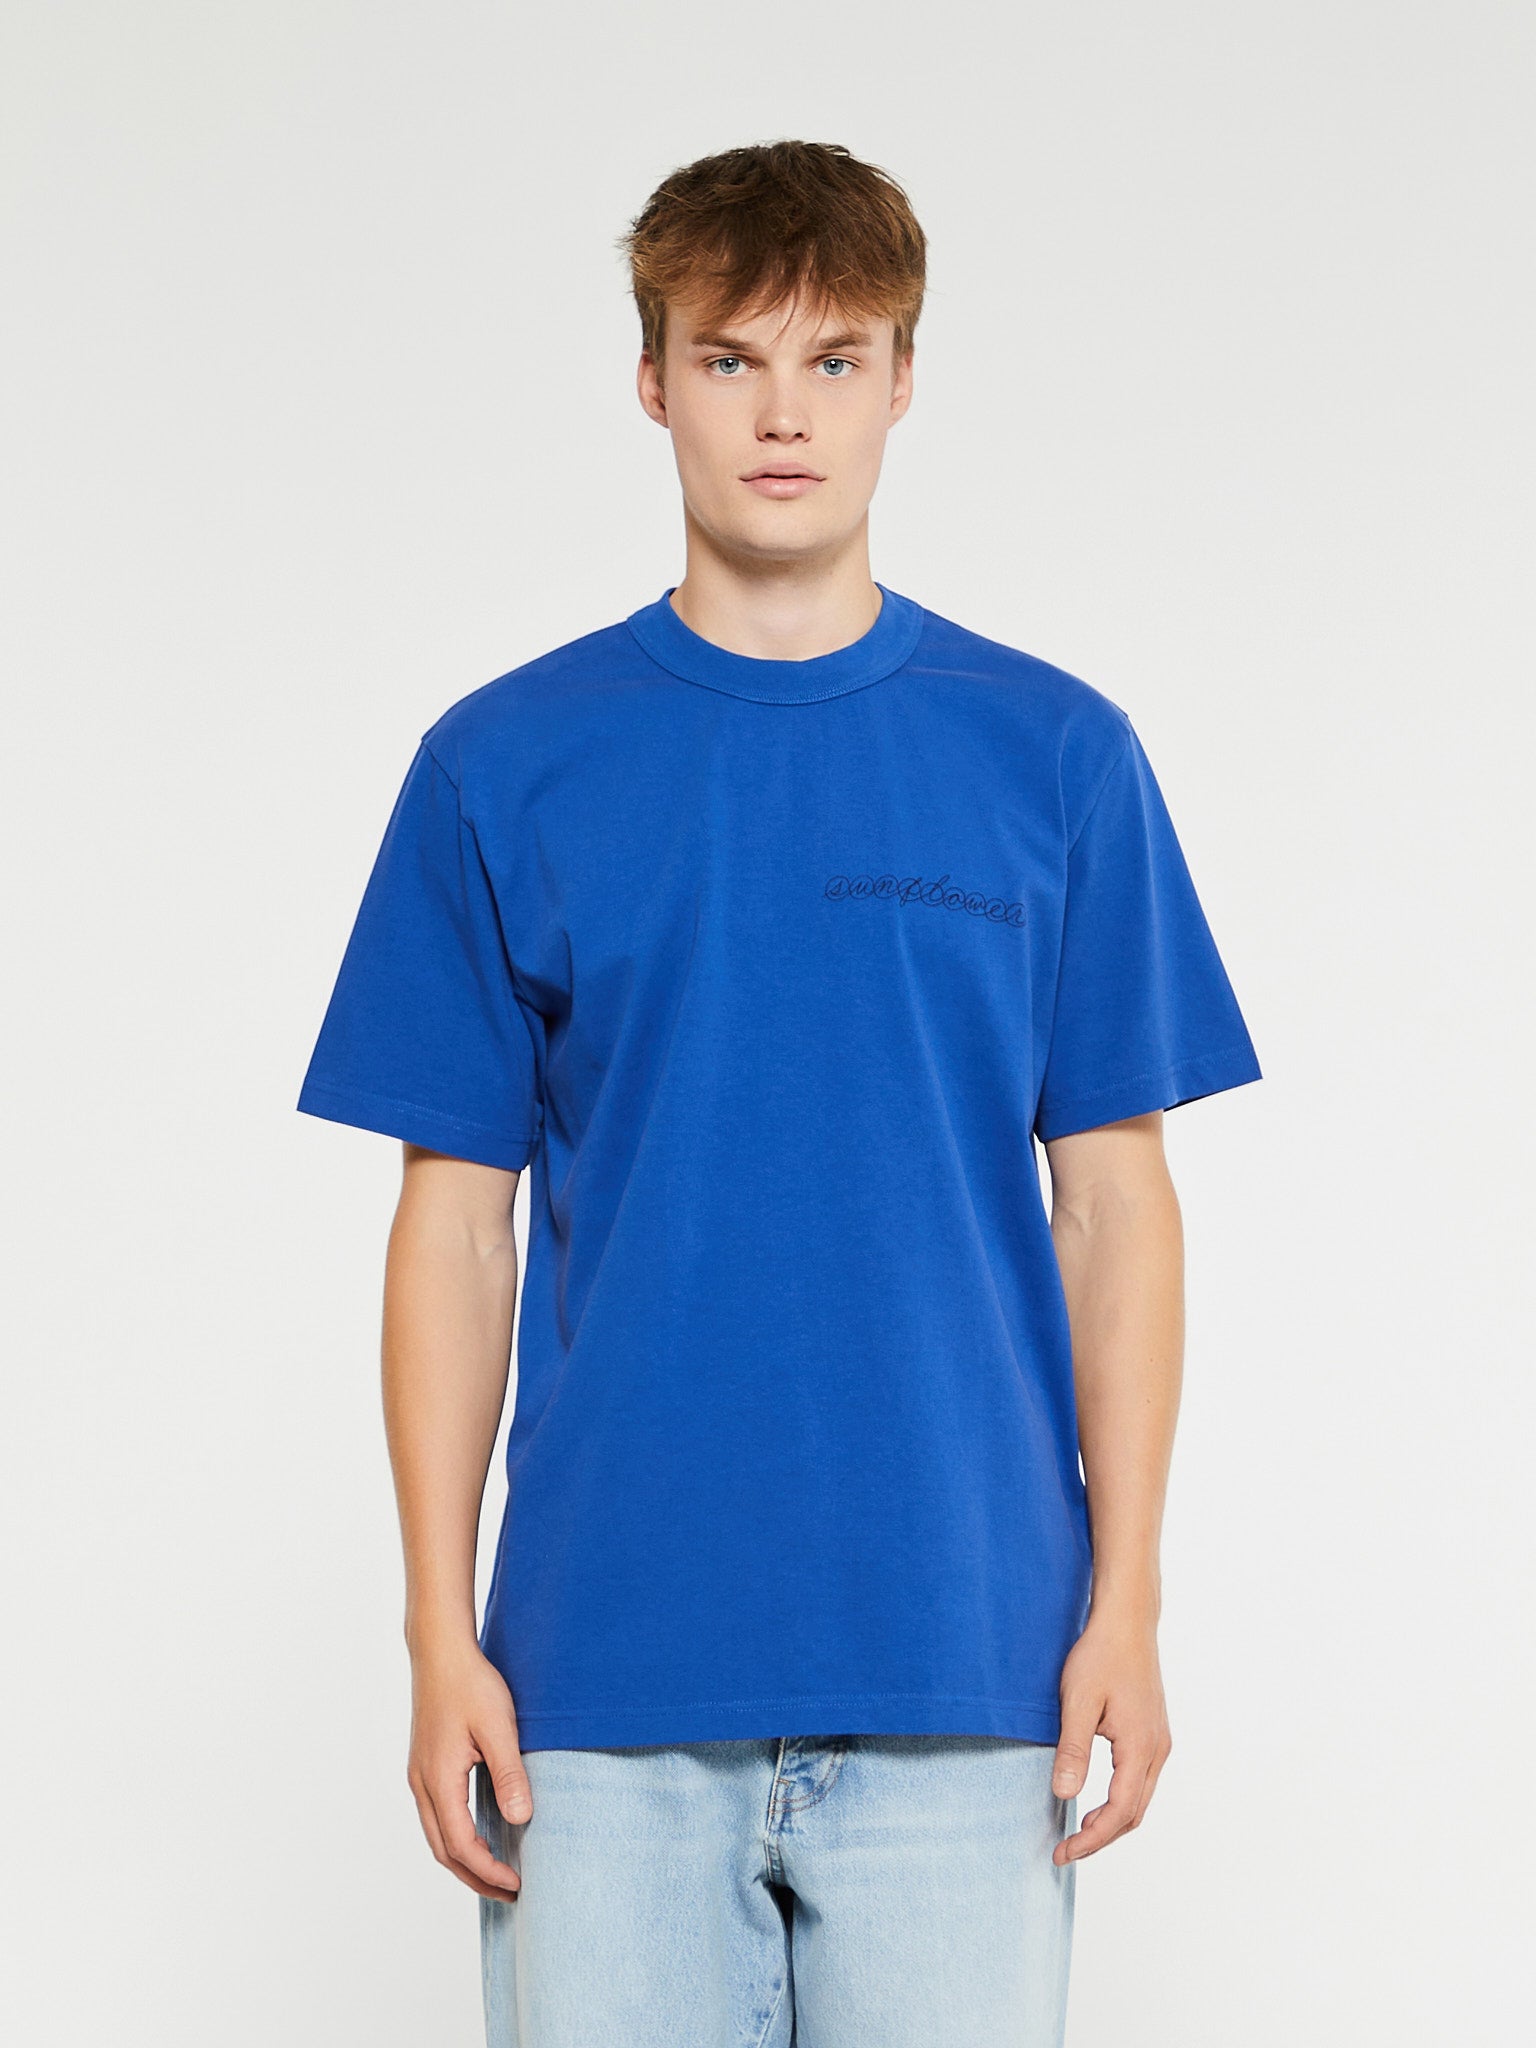 Sunflower - Master Logo T-Shirt in Blue